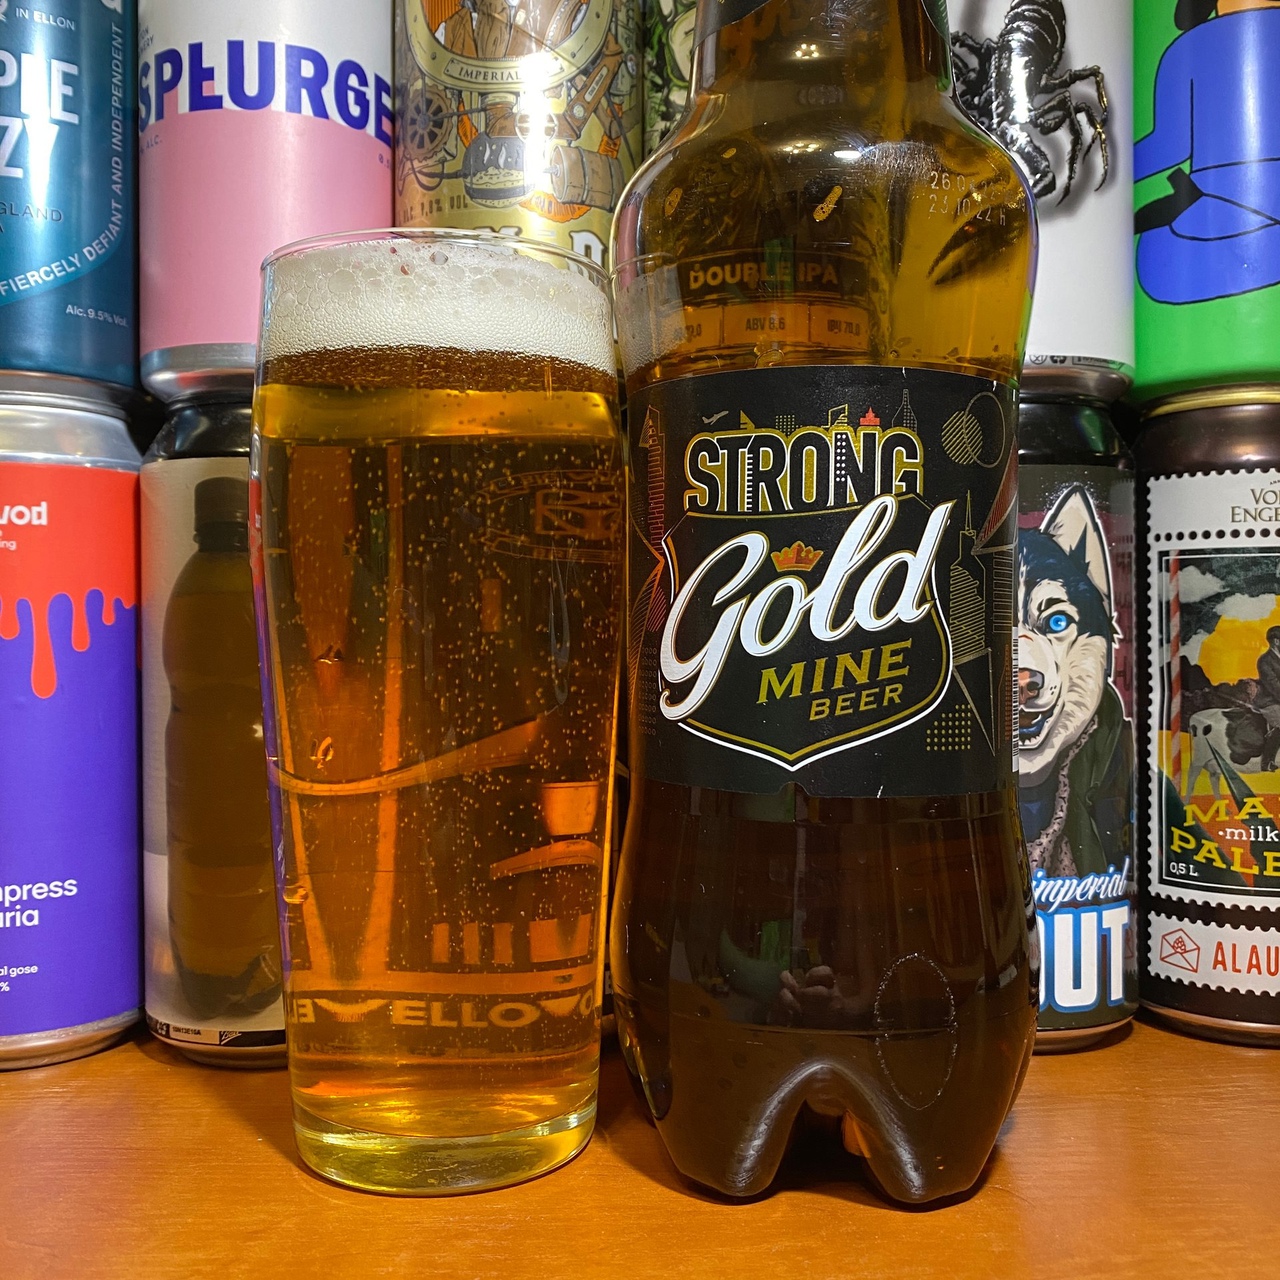 Strong beer. Голд майн бир Стронг. Пиво Gold mine Beer strong. Gold mine Beer ячменное. Голд Стронг пиво 8%.